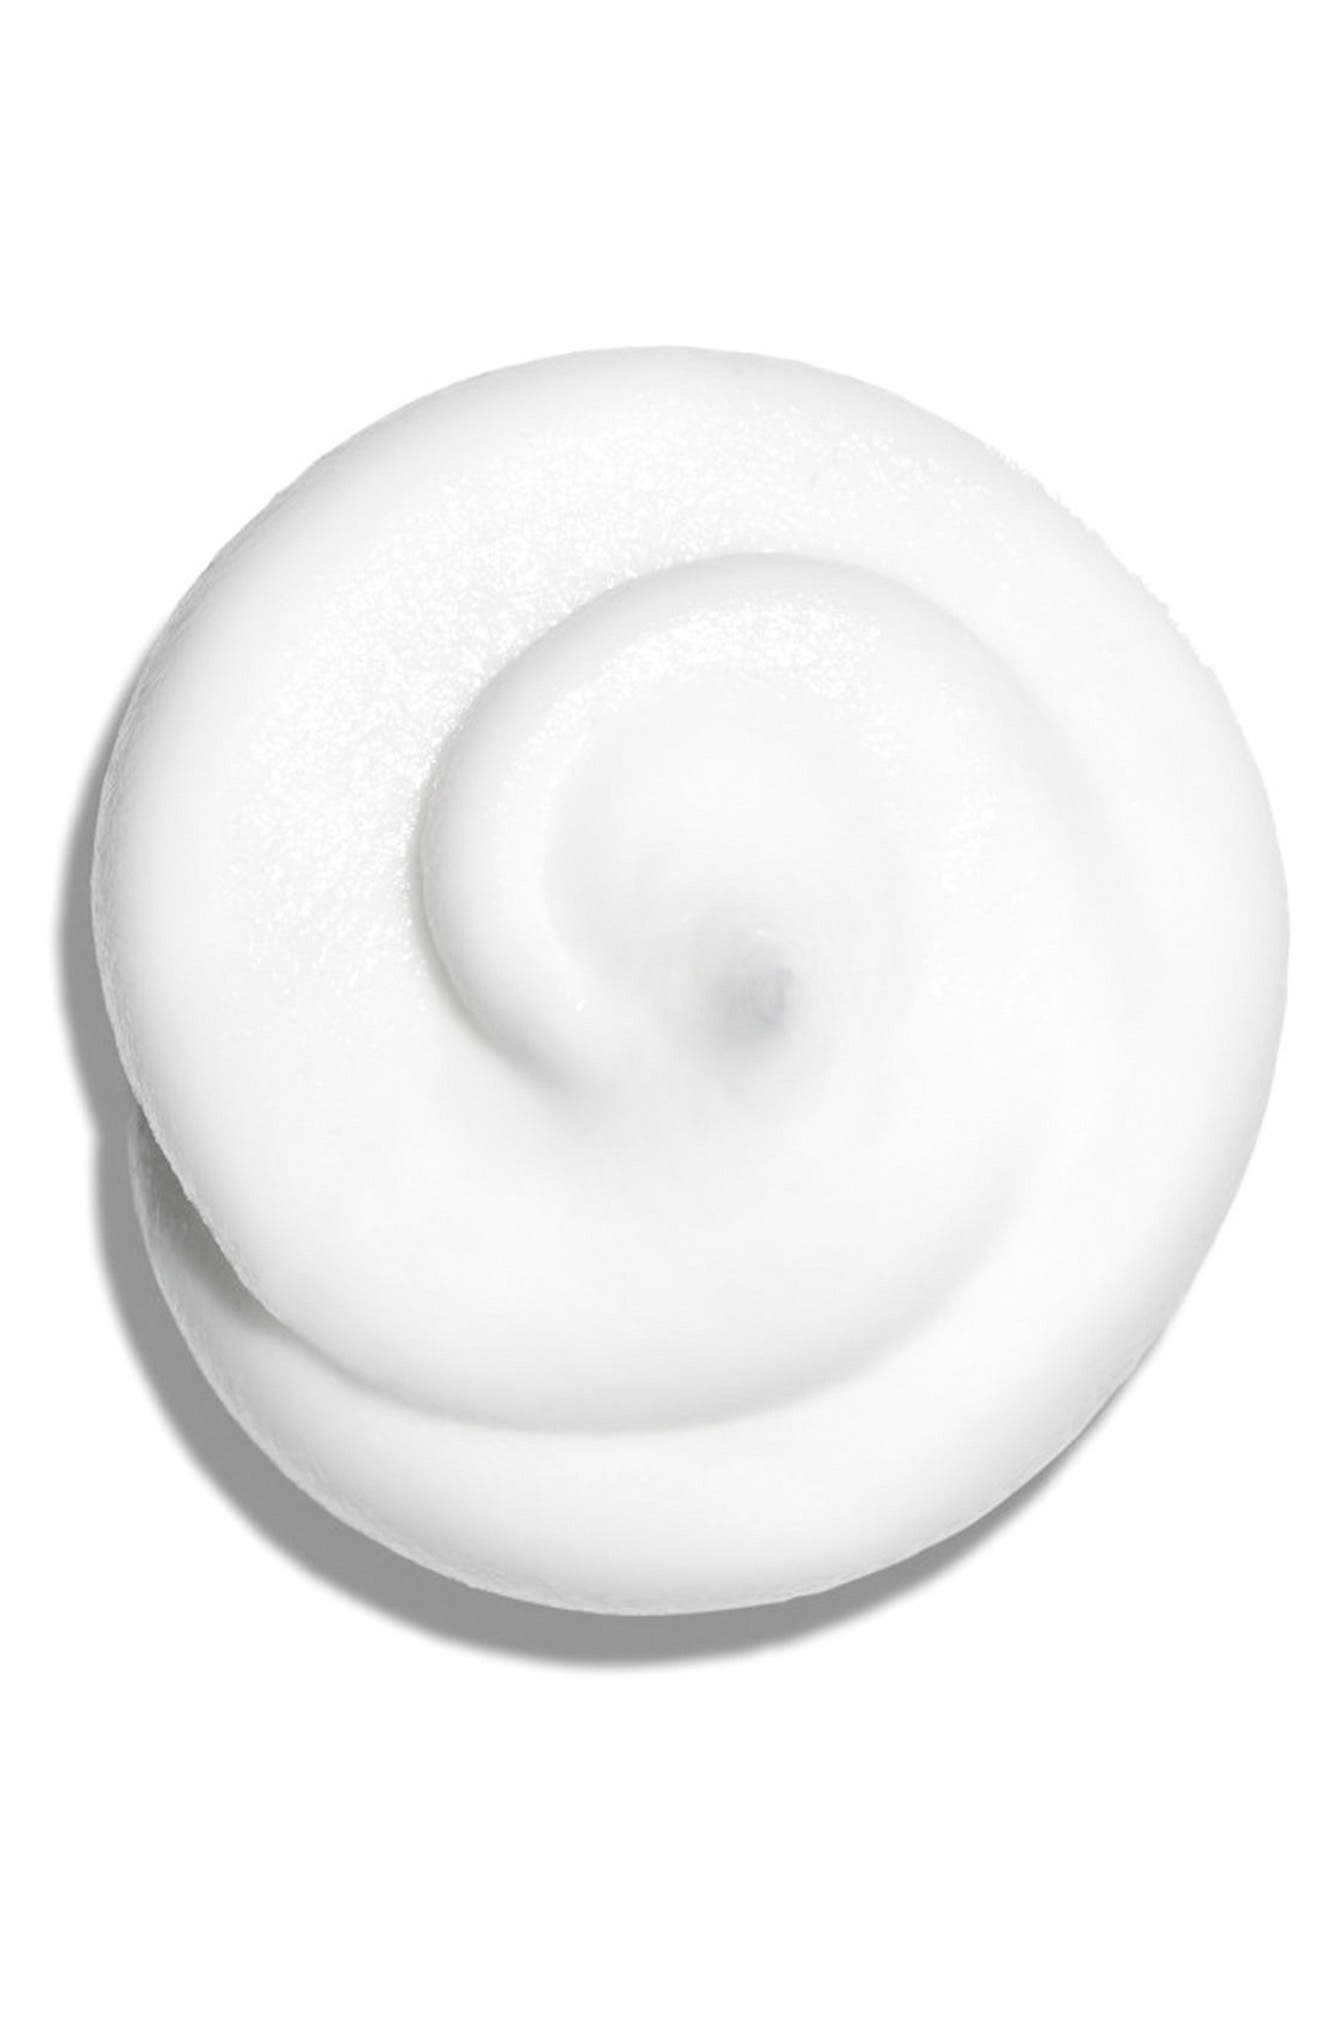 Clarins Hydra-Essentiel Rich Cream - Very Dry Skin